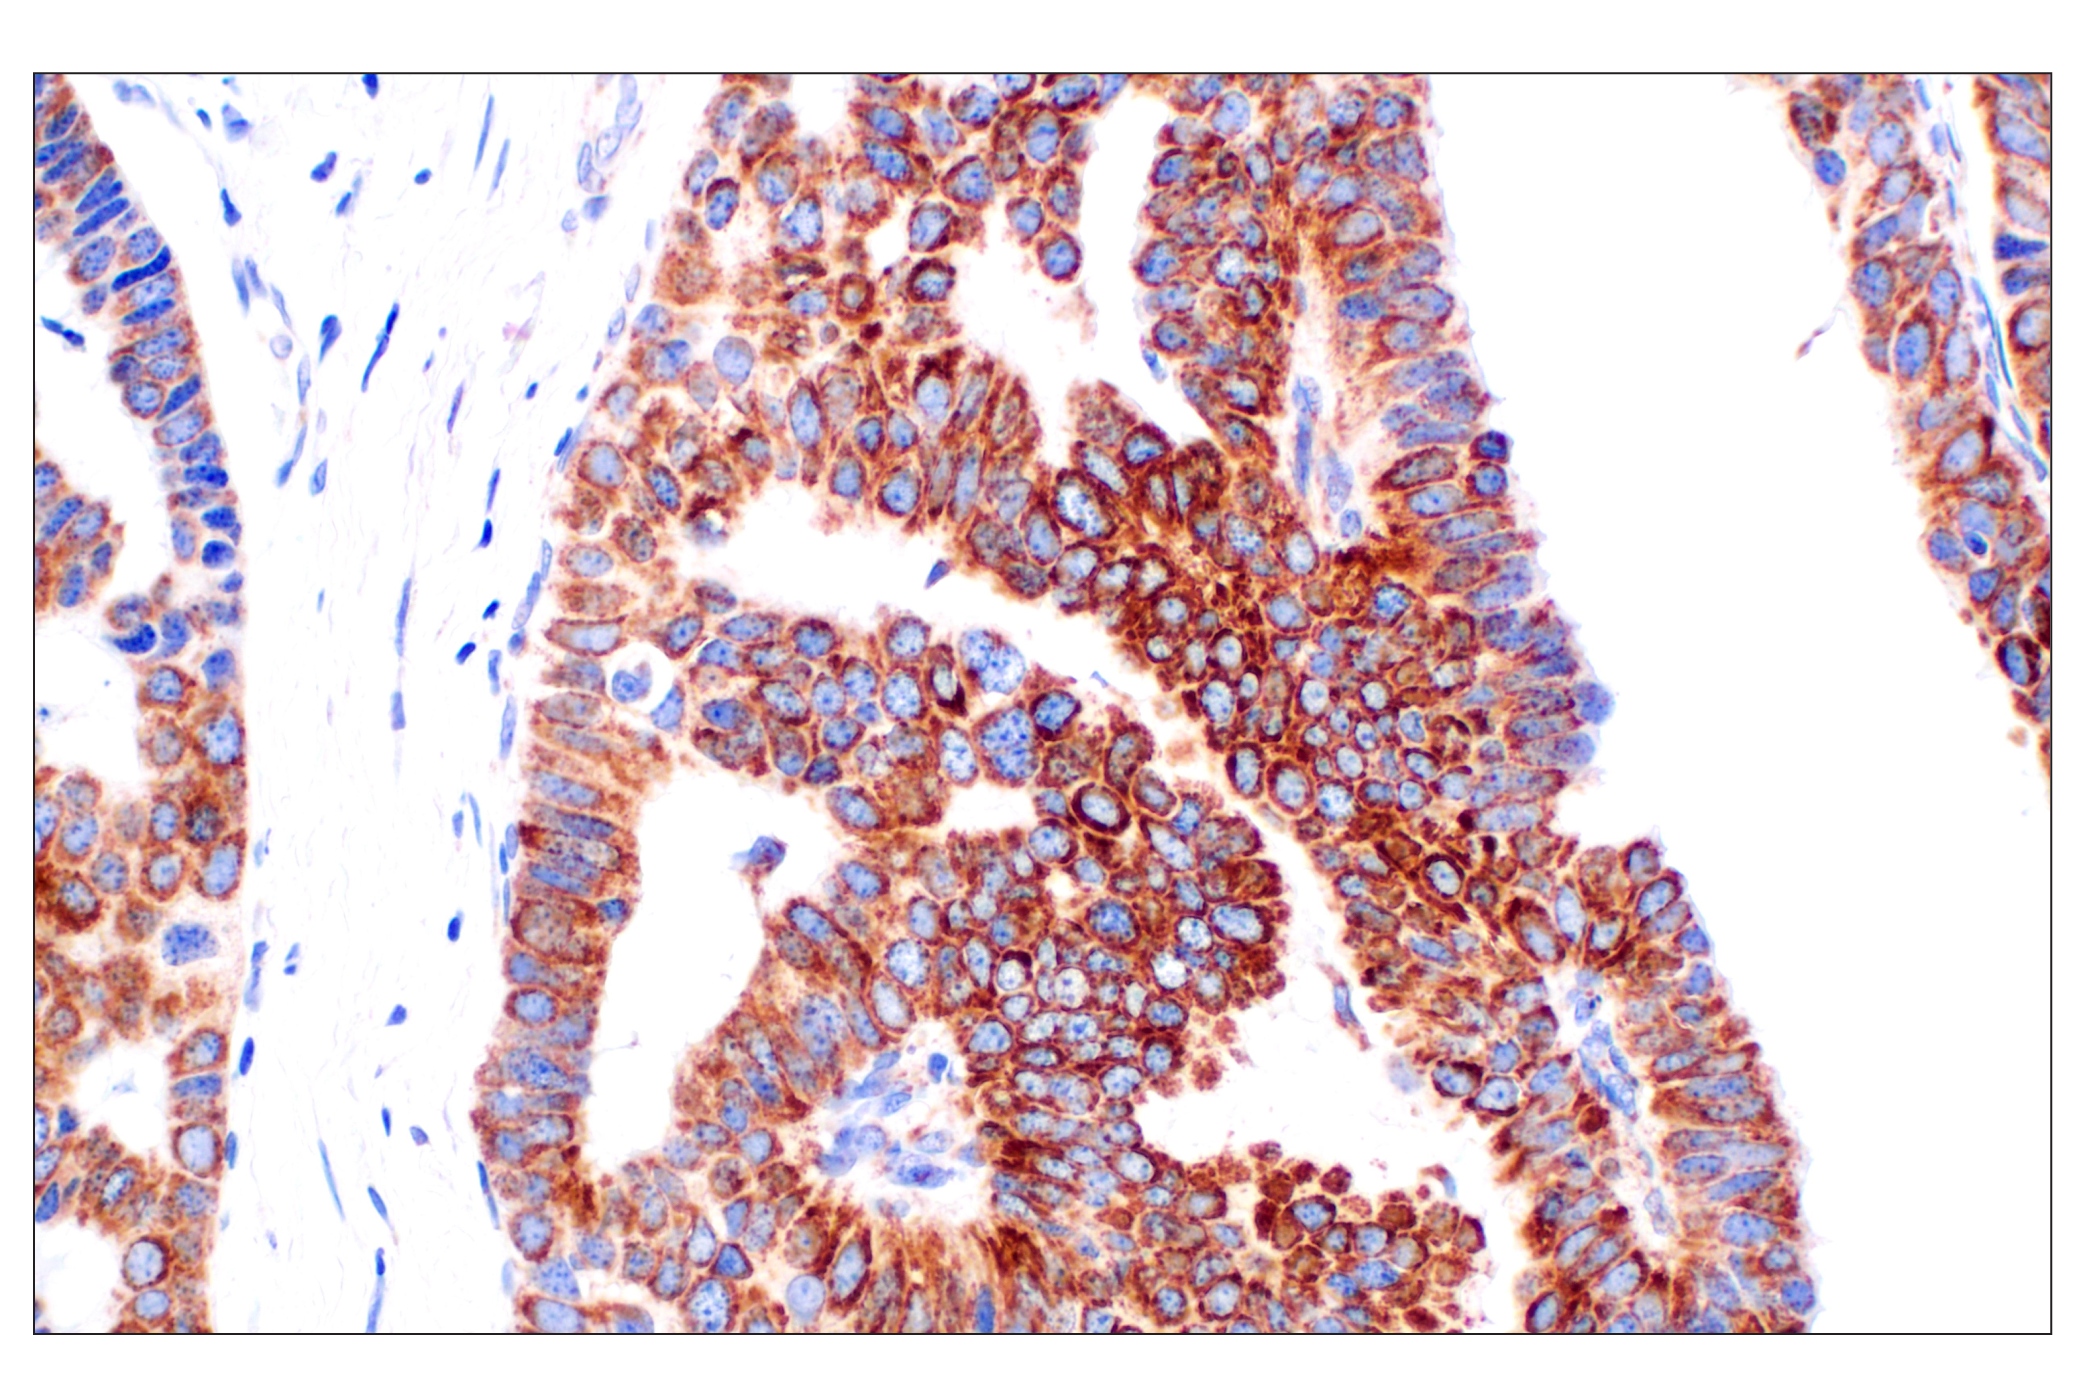  Image 33: Cell Fractionation Antibody Sampler Kit